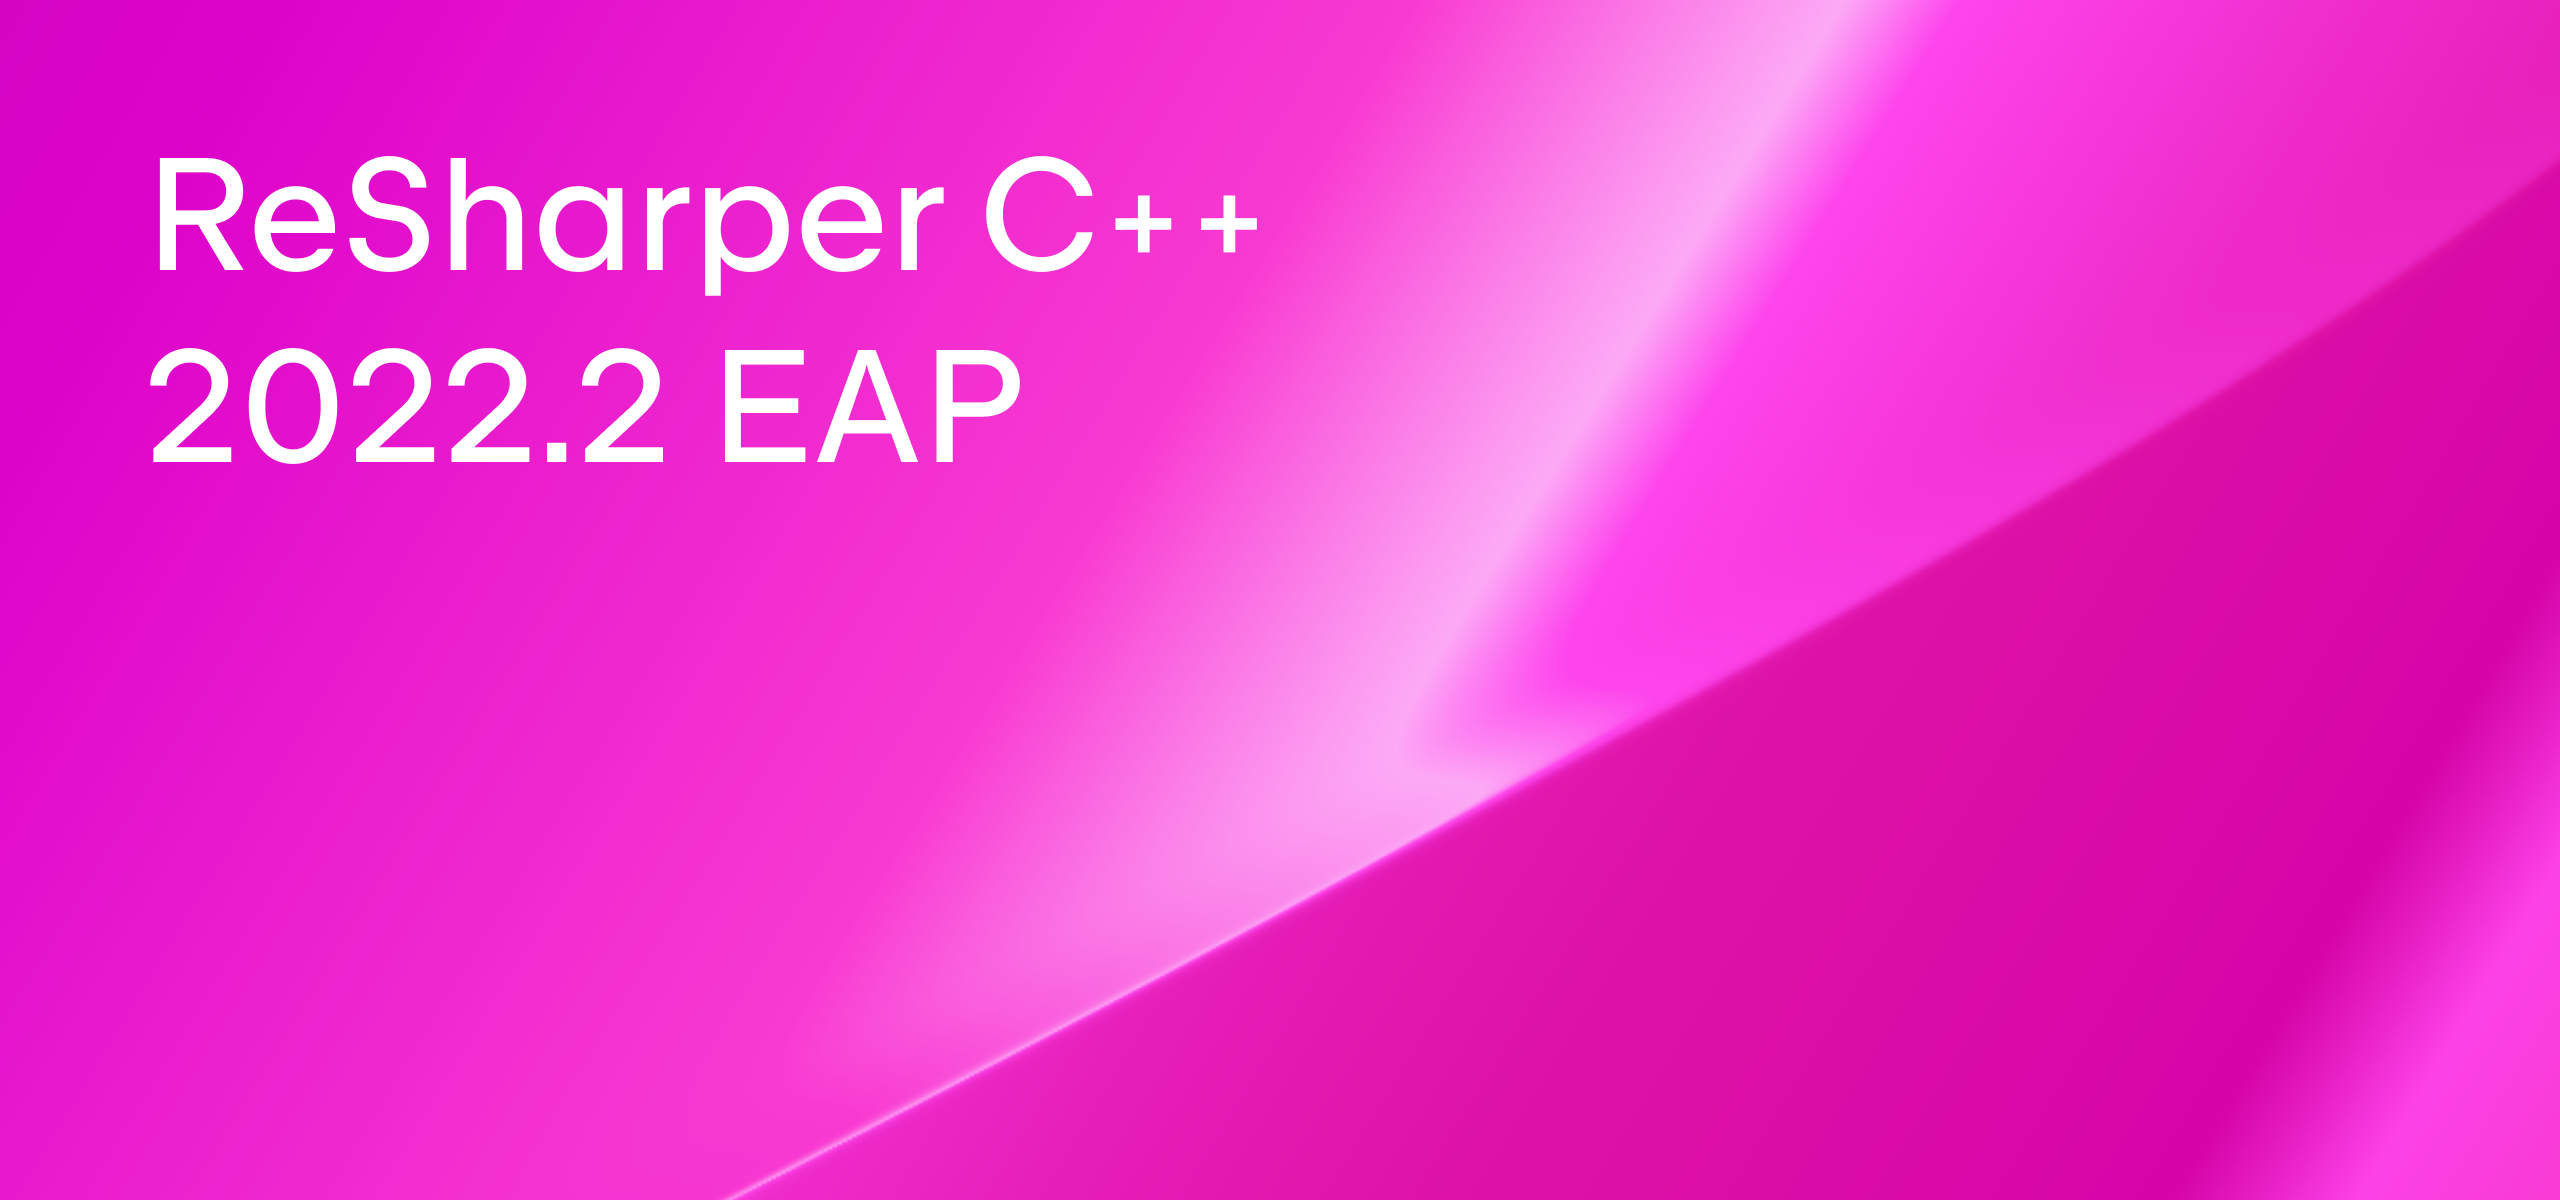 ReSharper C++ 2022.2 EAP